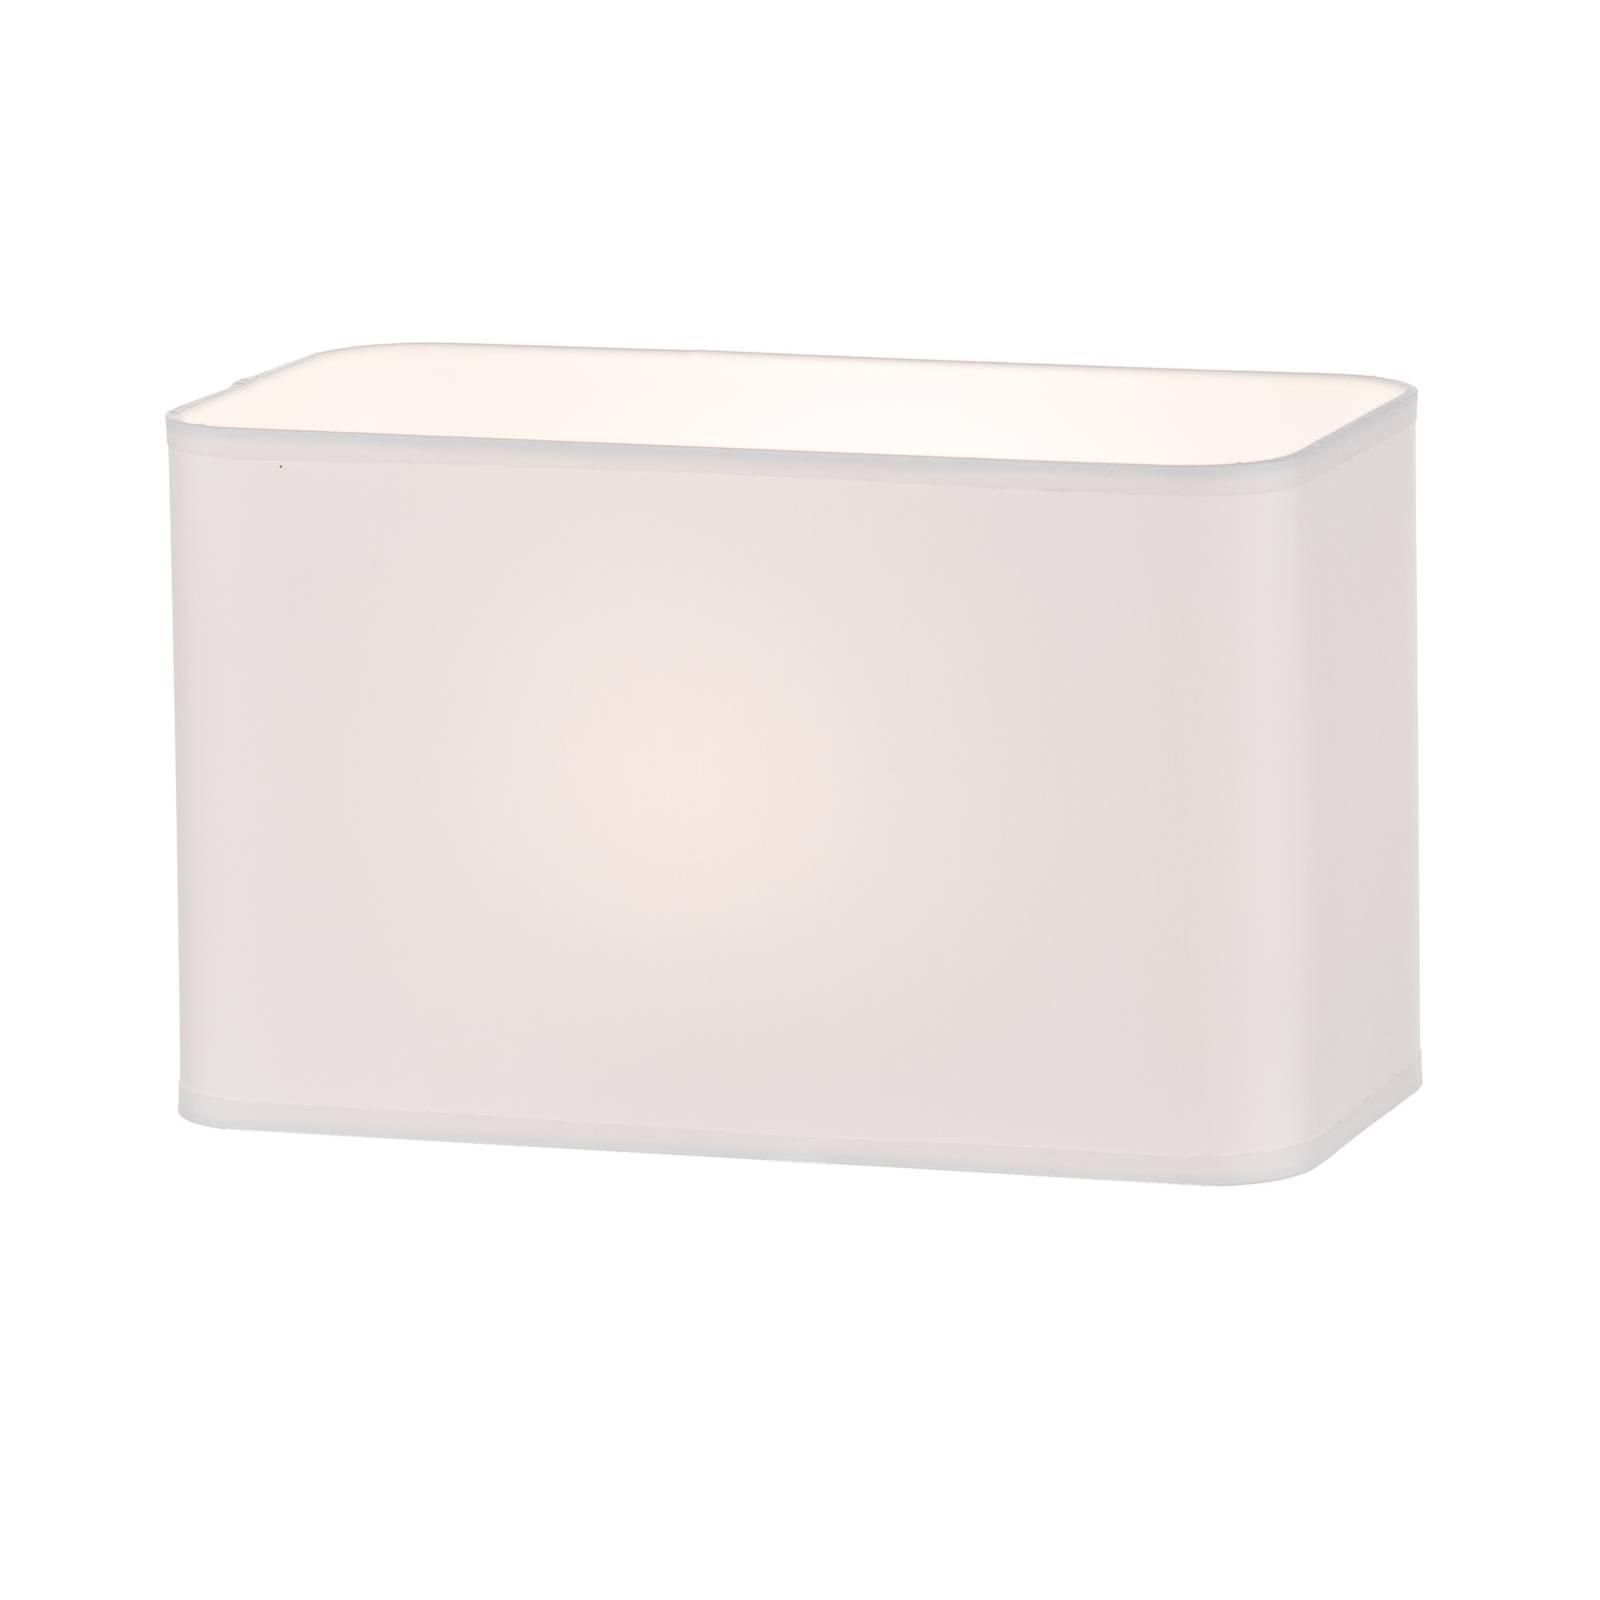 Cassy lámpaernyő 30 x 15 x 18 cm fehér